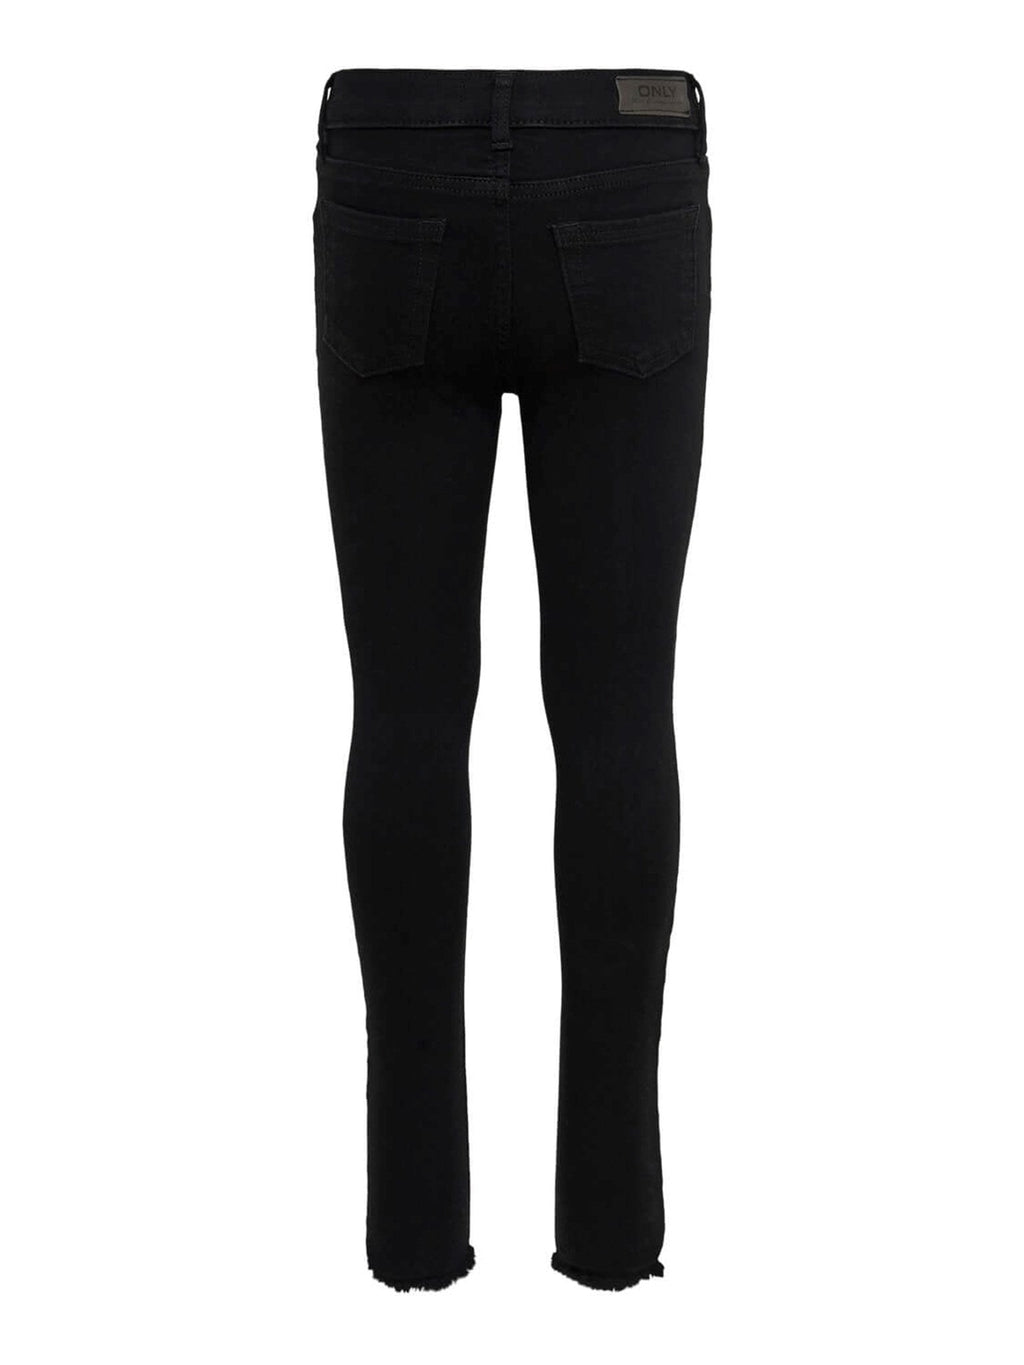 Skinny Jeans - Black denim